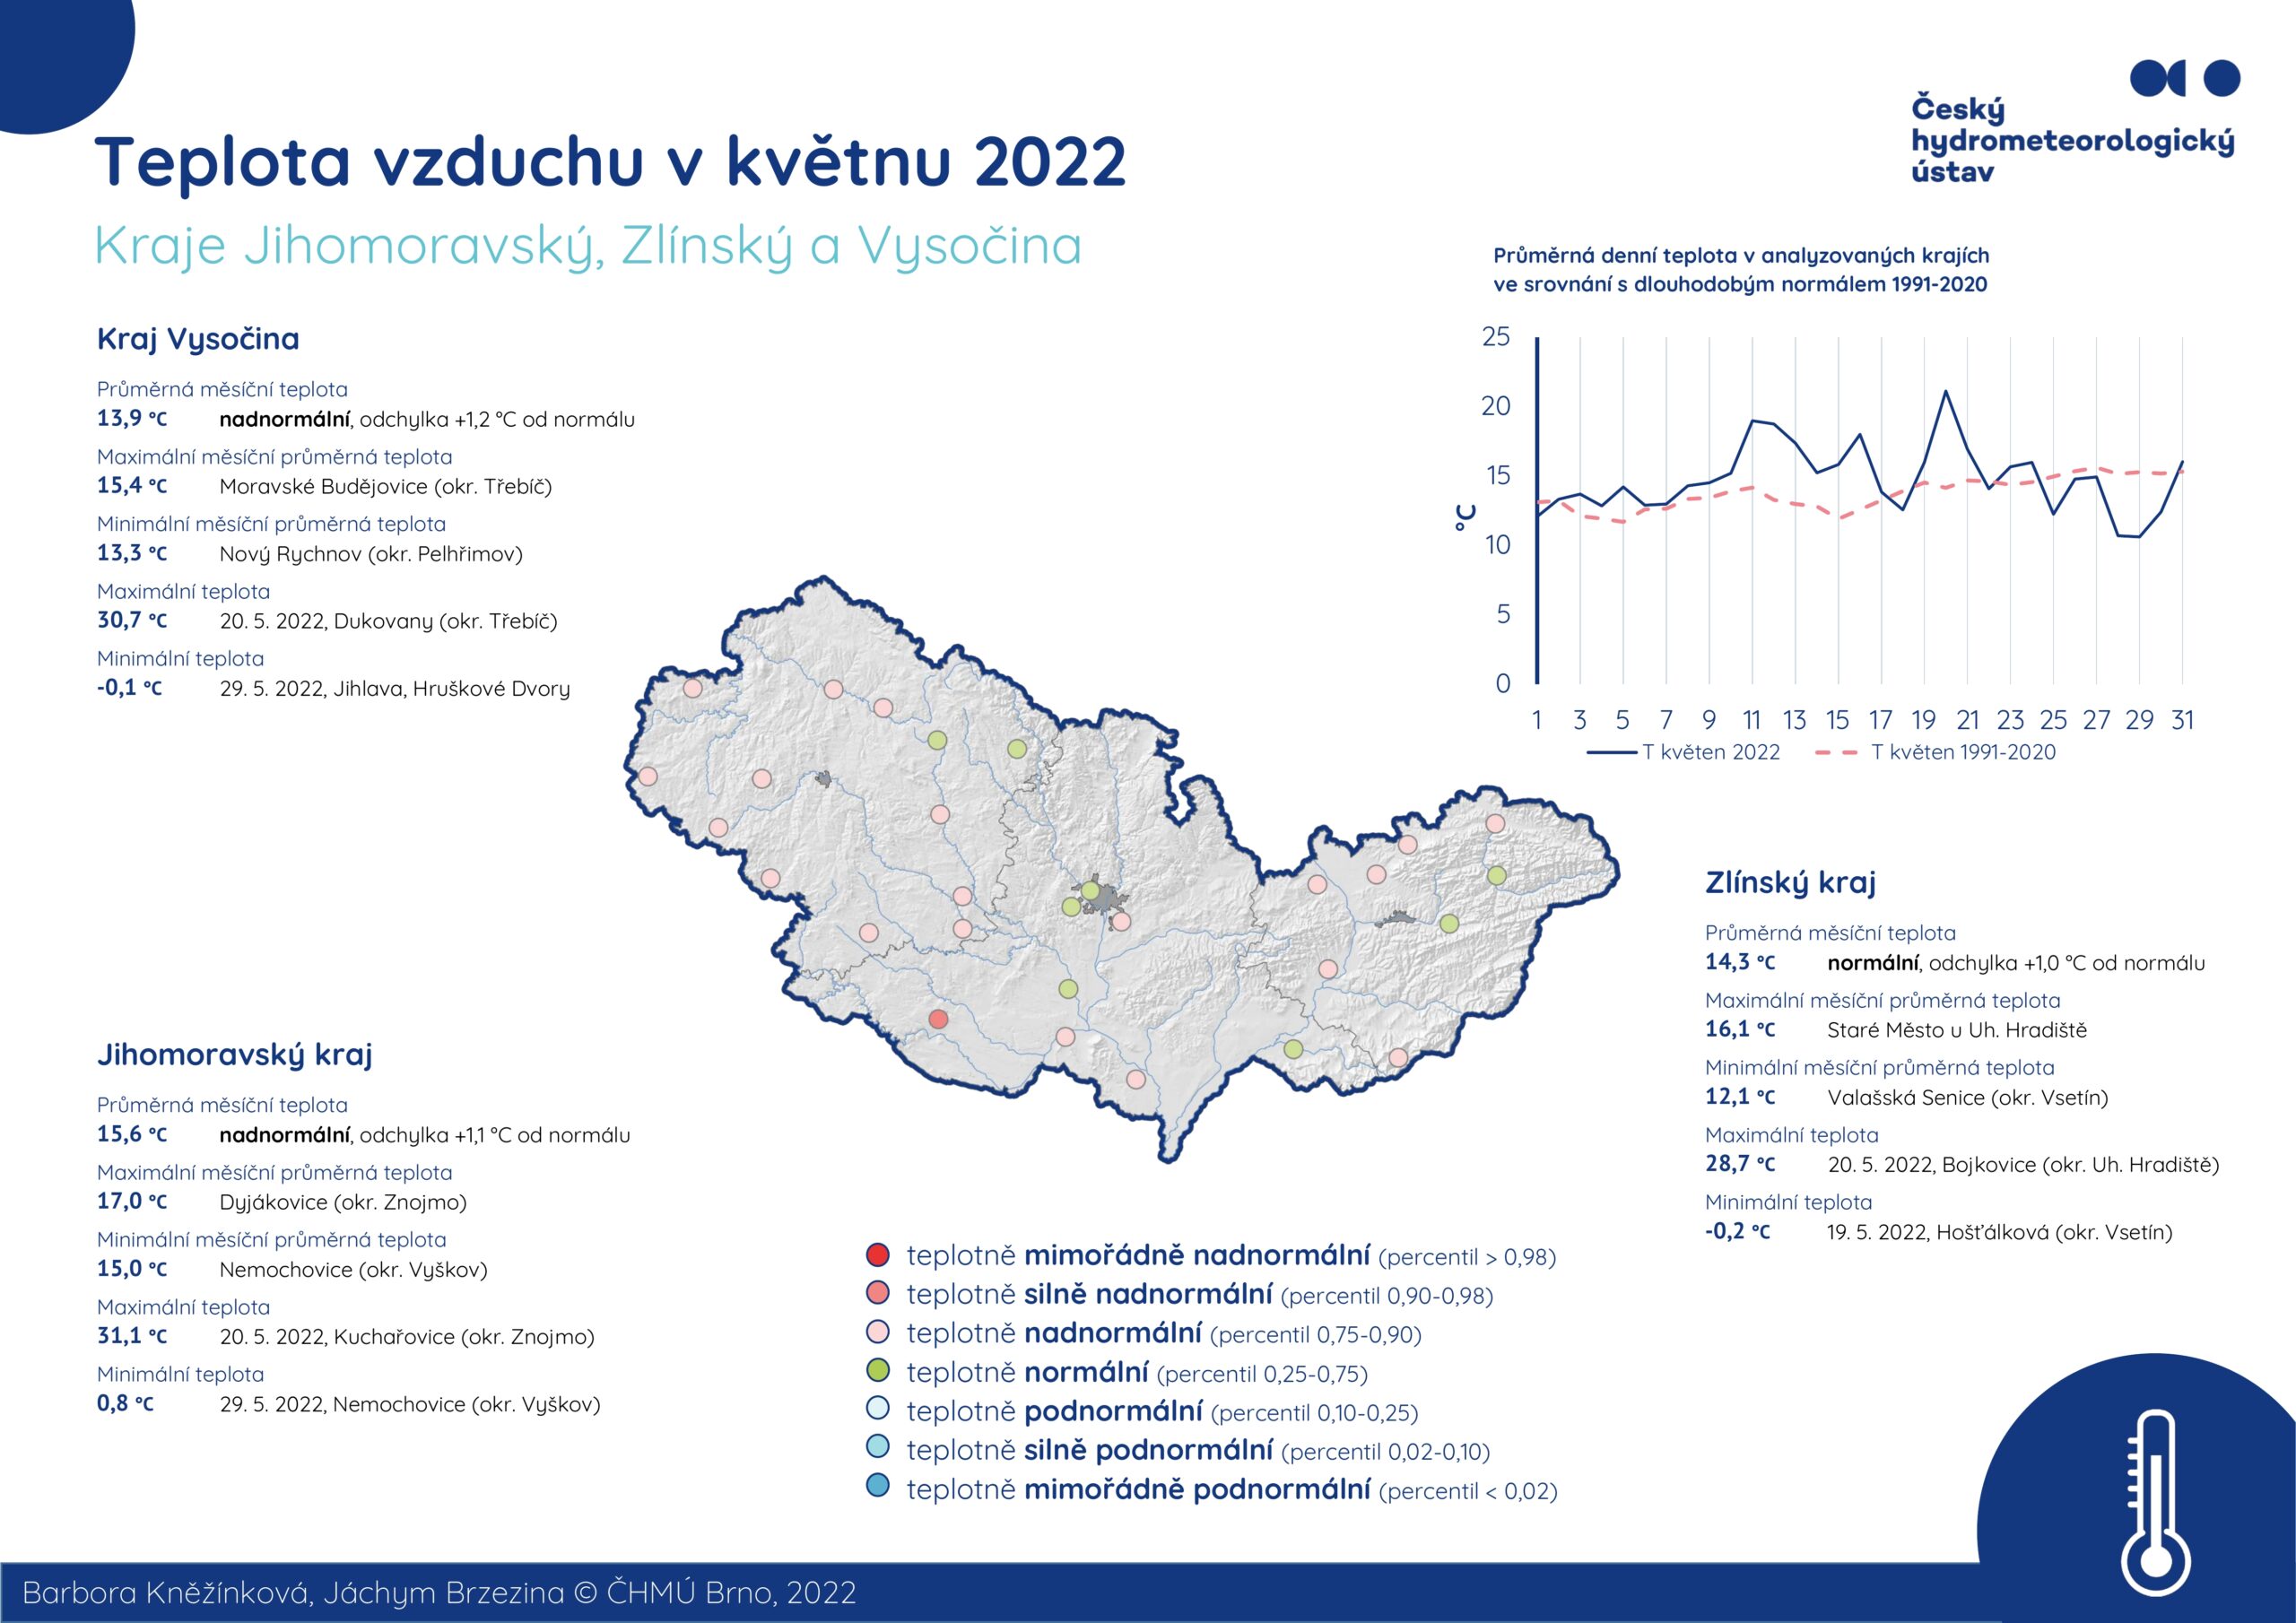 Teplota vzduchu v květnu 2022 – Jihomoravský kraj, Zlínský kraj a Kraj Vysočina1 min čtení